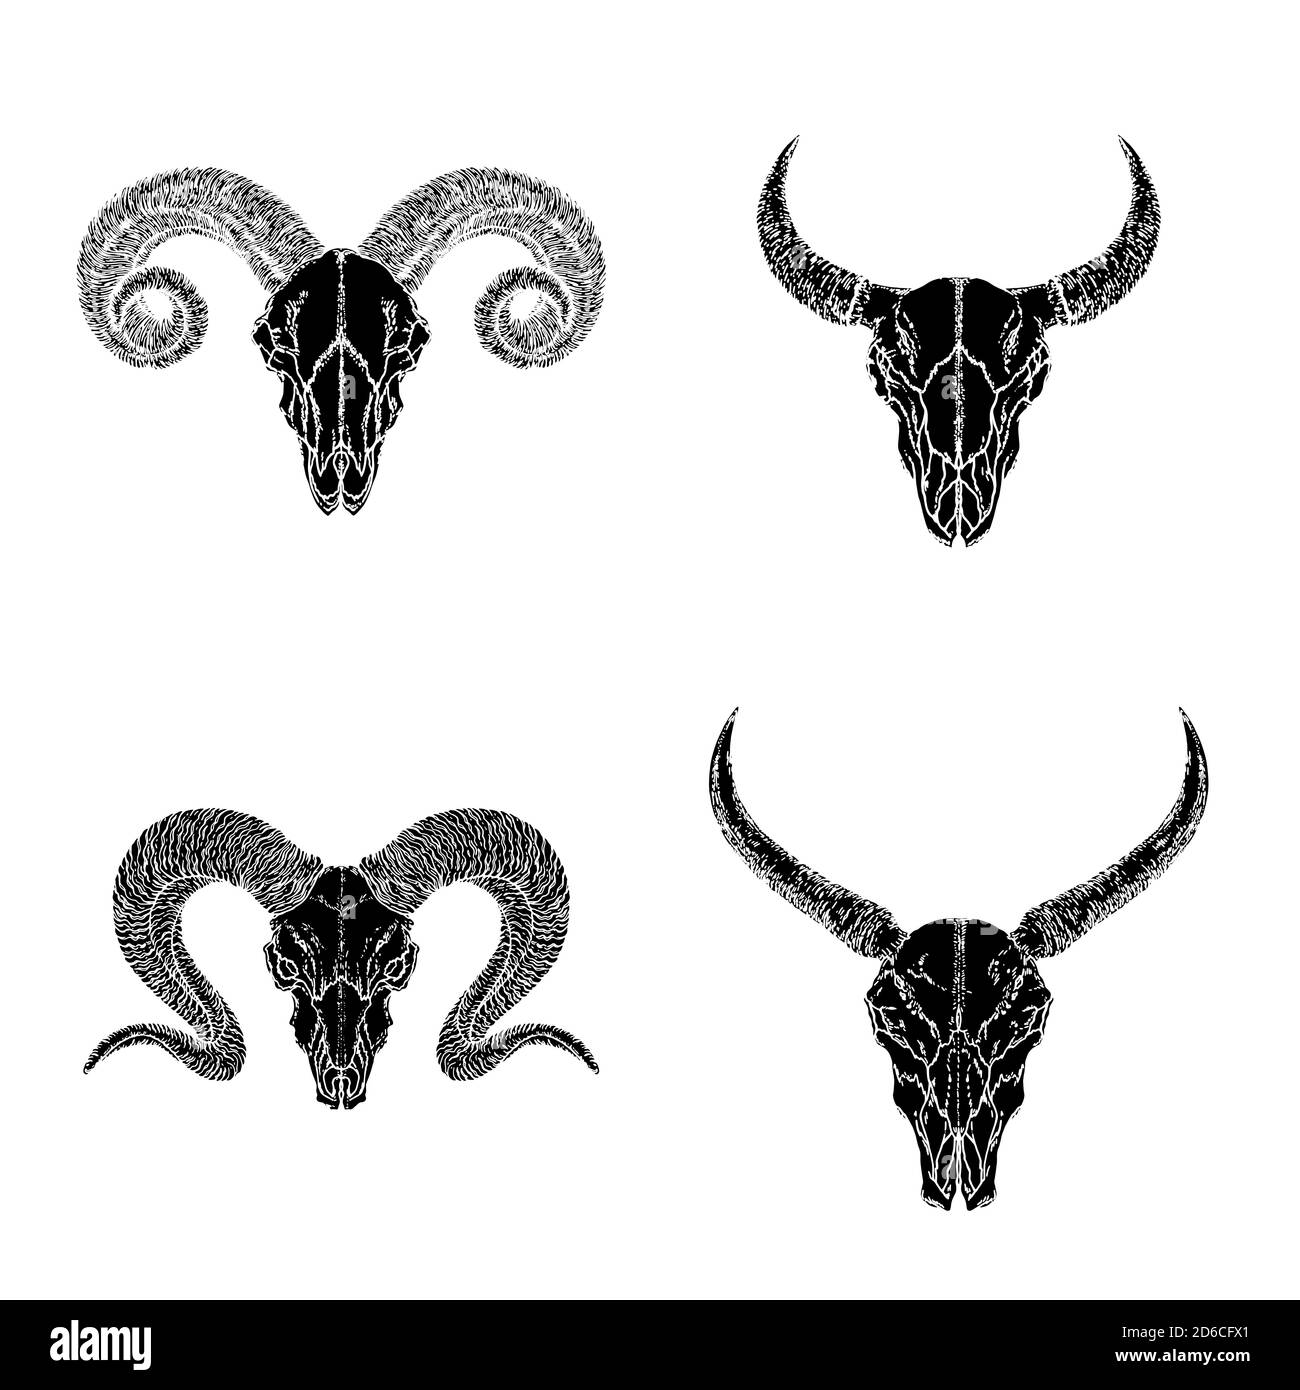 Insieme vettoriale di teschi disegnati a mano di animali cornati: Bufali selvatici, toro e arieti su sfondo bianco. Sagome nere. Per la progettazione, la stampa, il tatuaggio o Illustrazione Vettoriale